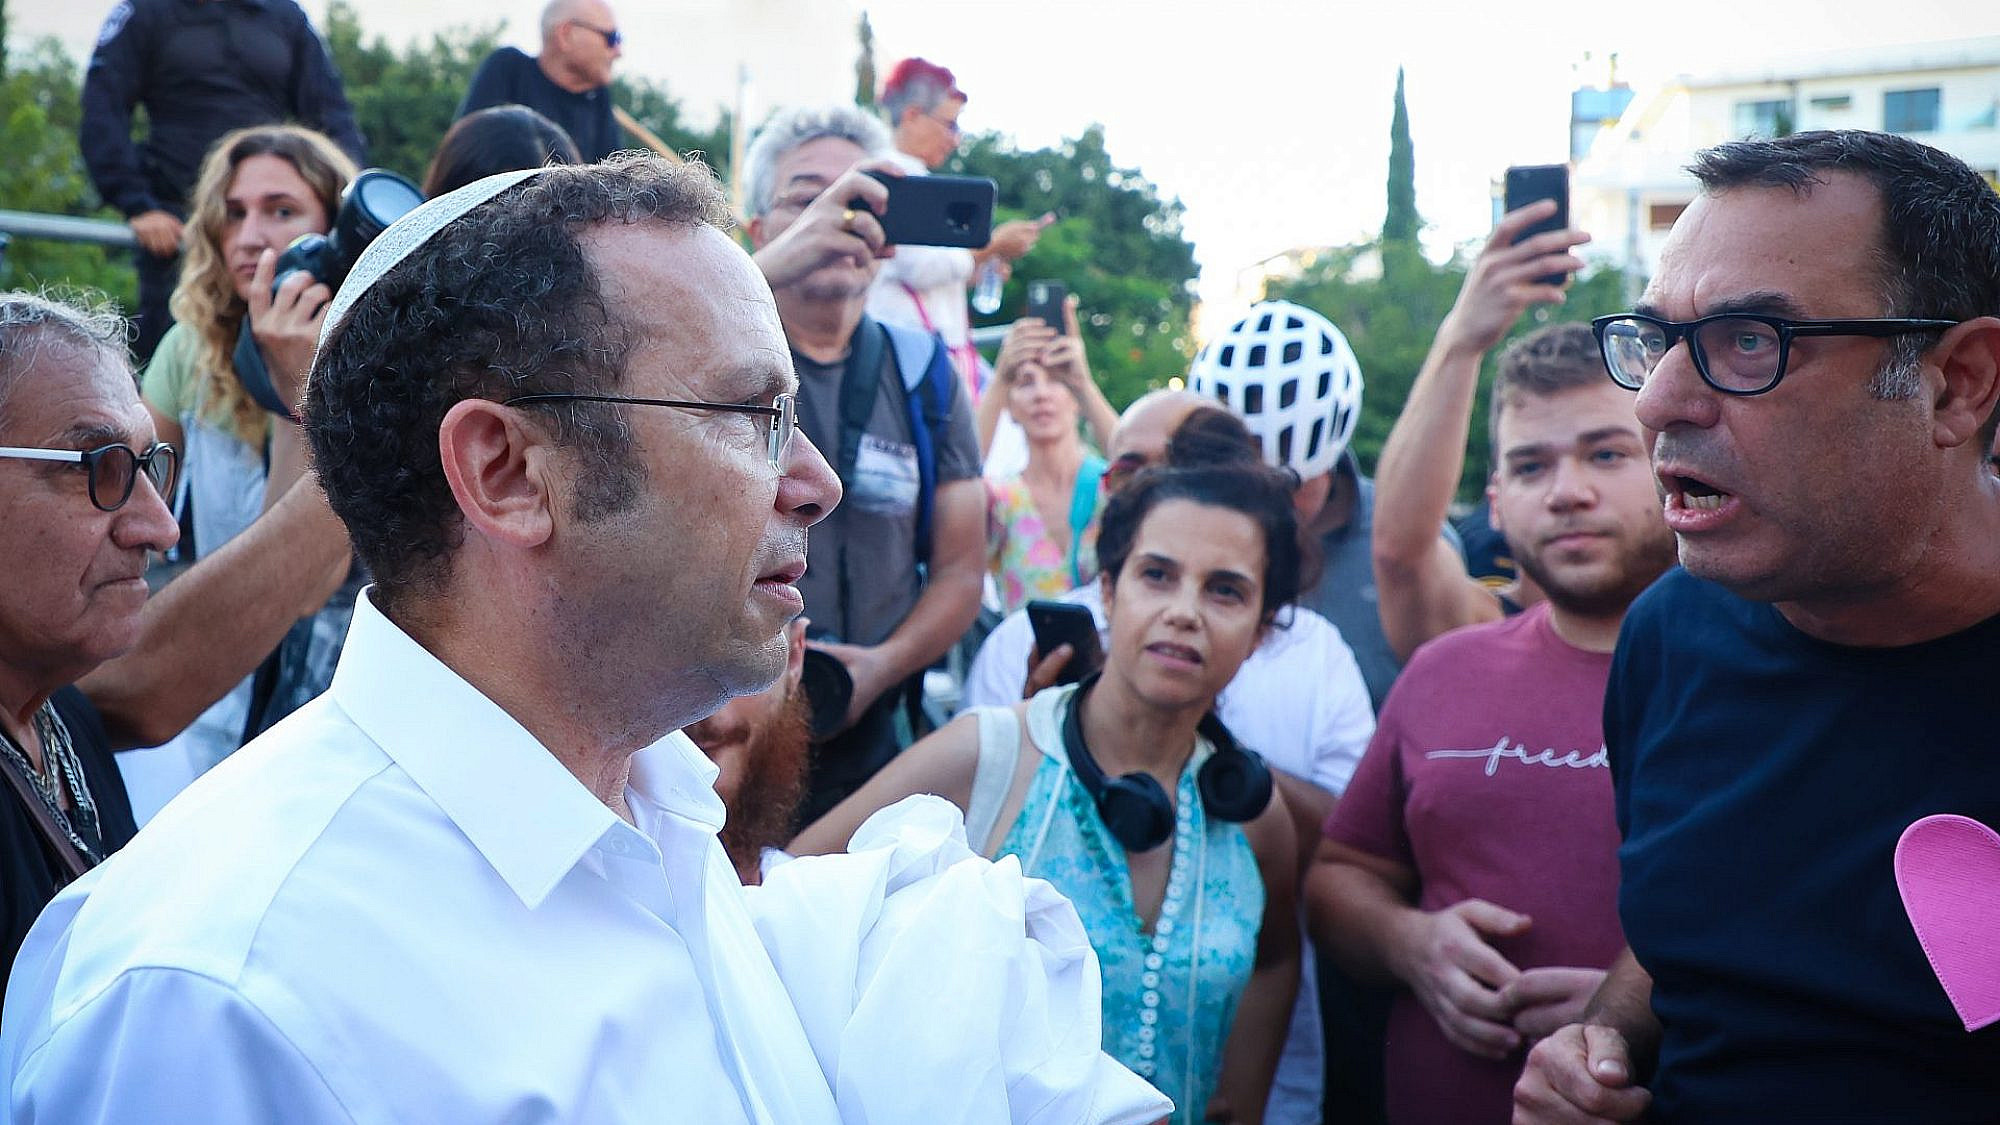 יוצר הטלוויזיה אבנר ברנהיימר מתעמת עם ישראל זעירא מ"ראש יהודי". ערב יום כיפור בכיכר דיזנגוף (צילום: שאול גרינפלד)